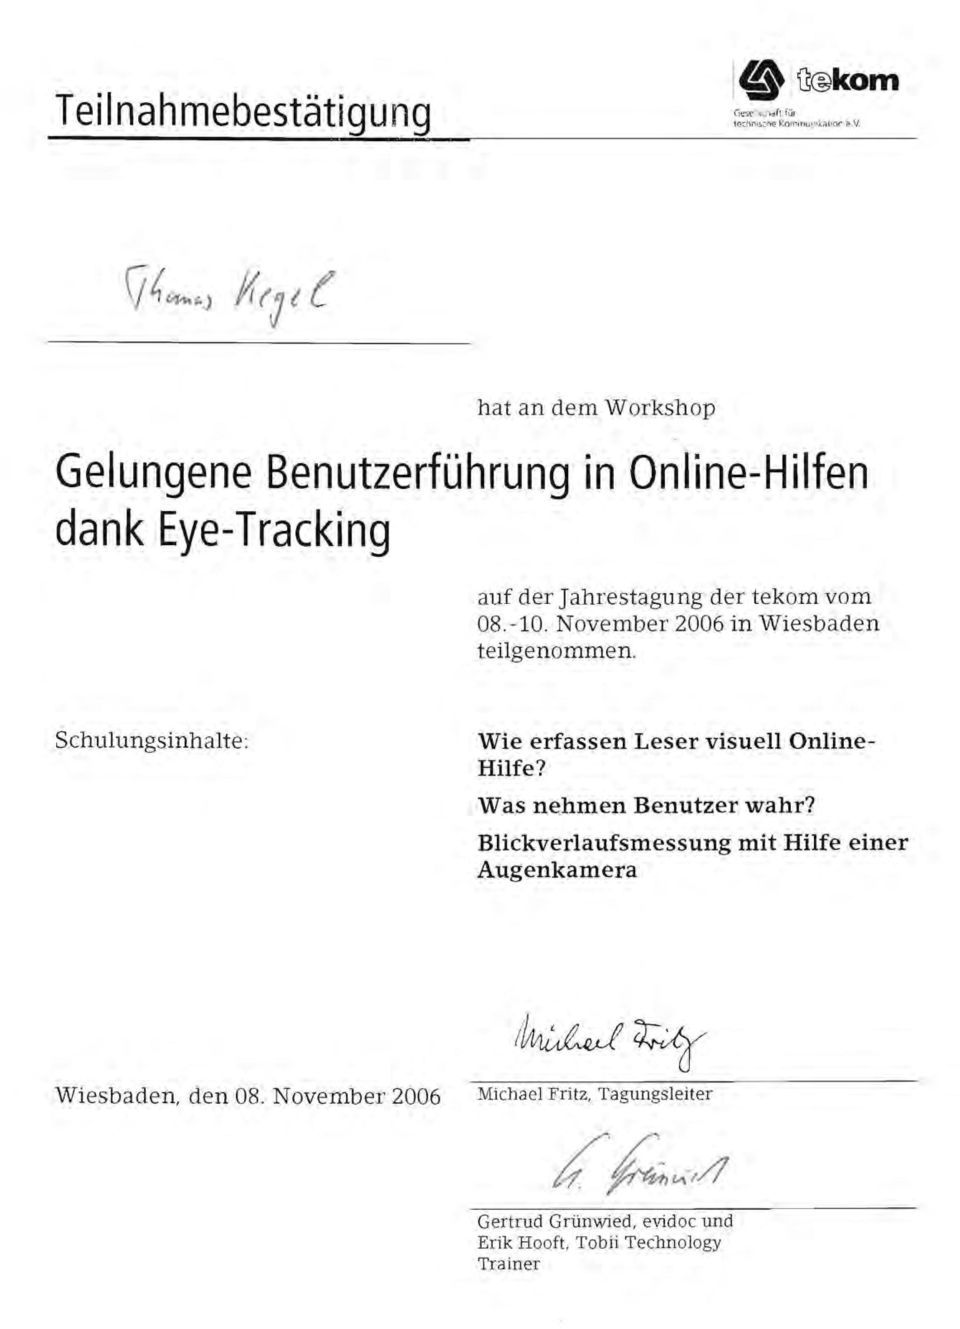 der Jahrestagung der tekom vom 08.-10. November 2006 in Wiesbaden teilgenommen.